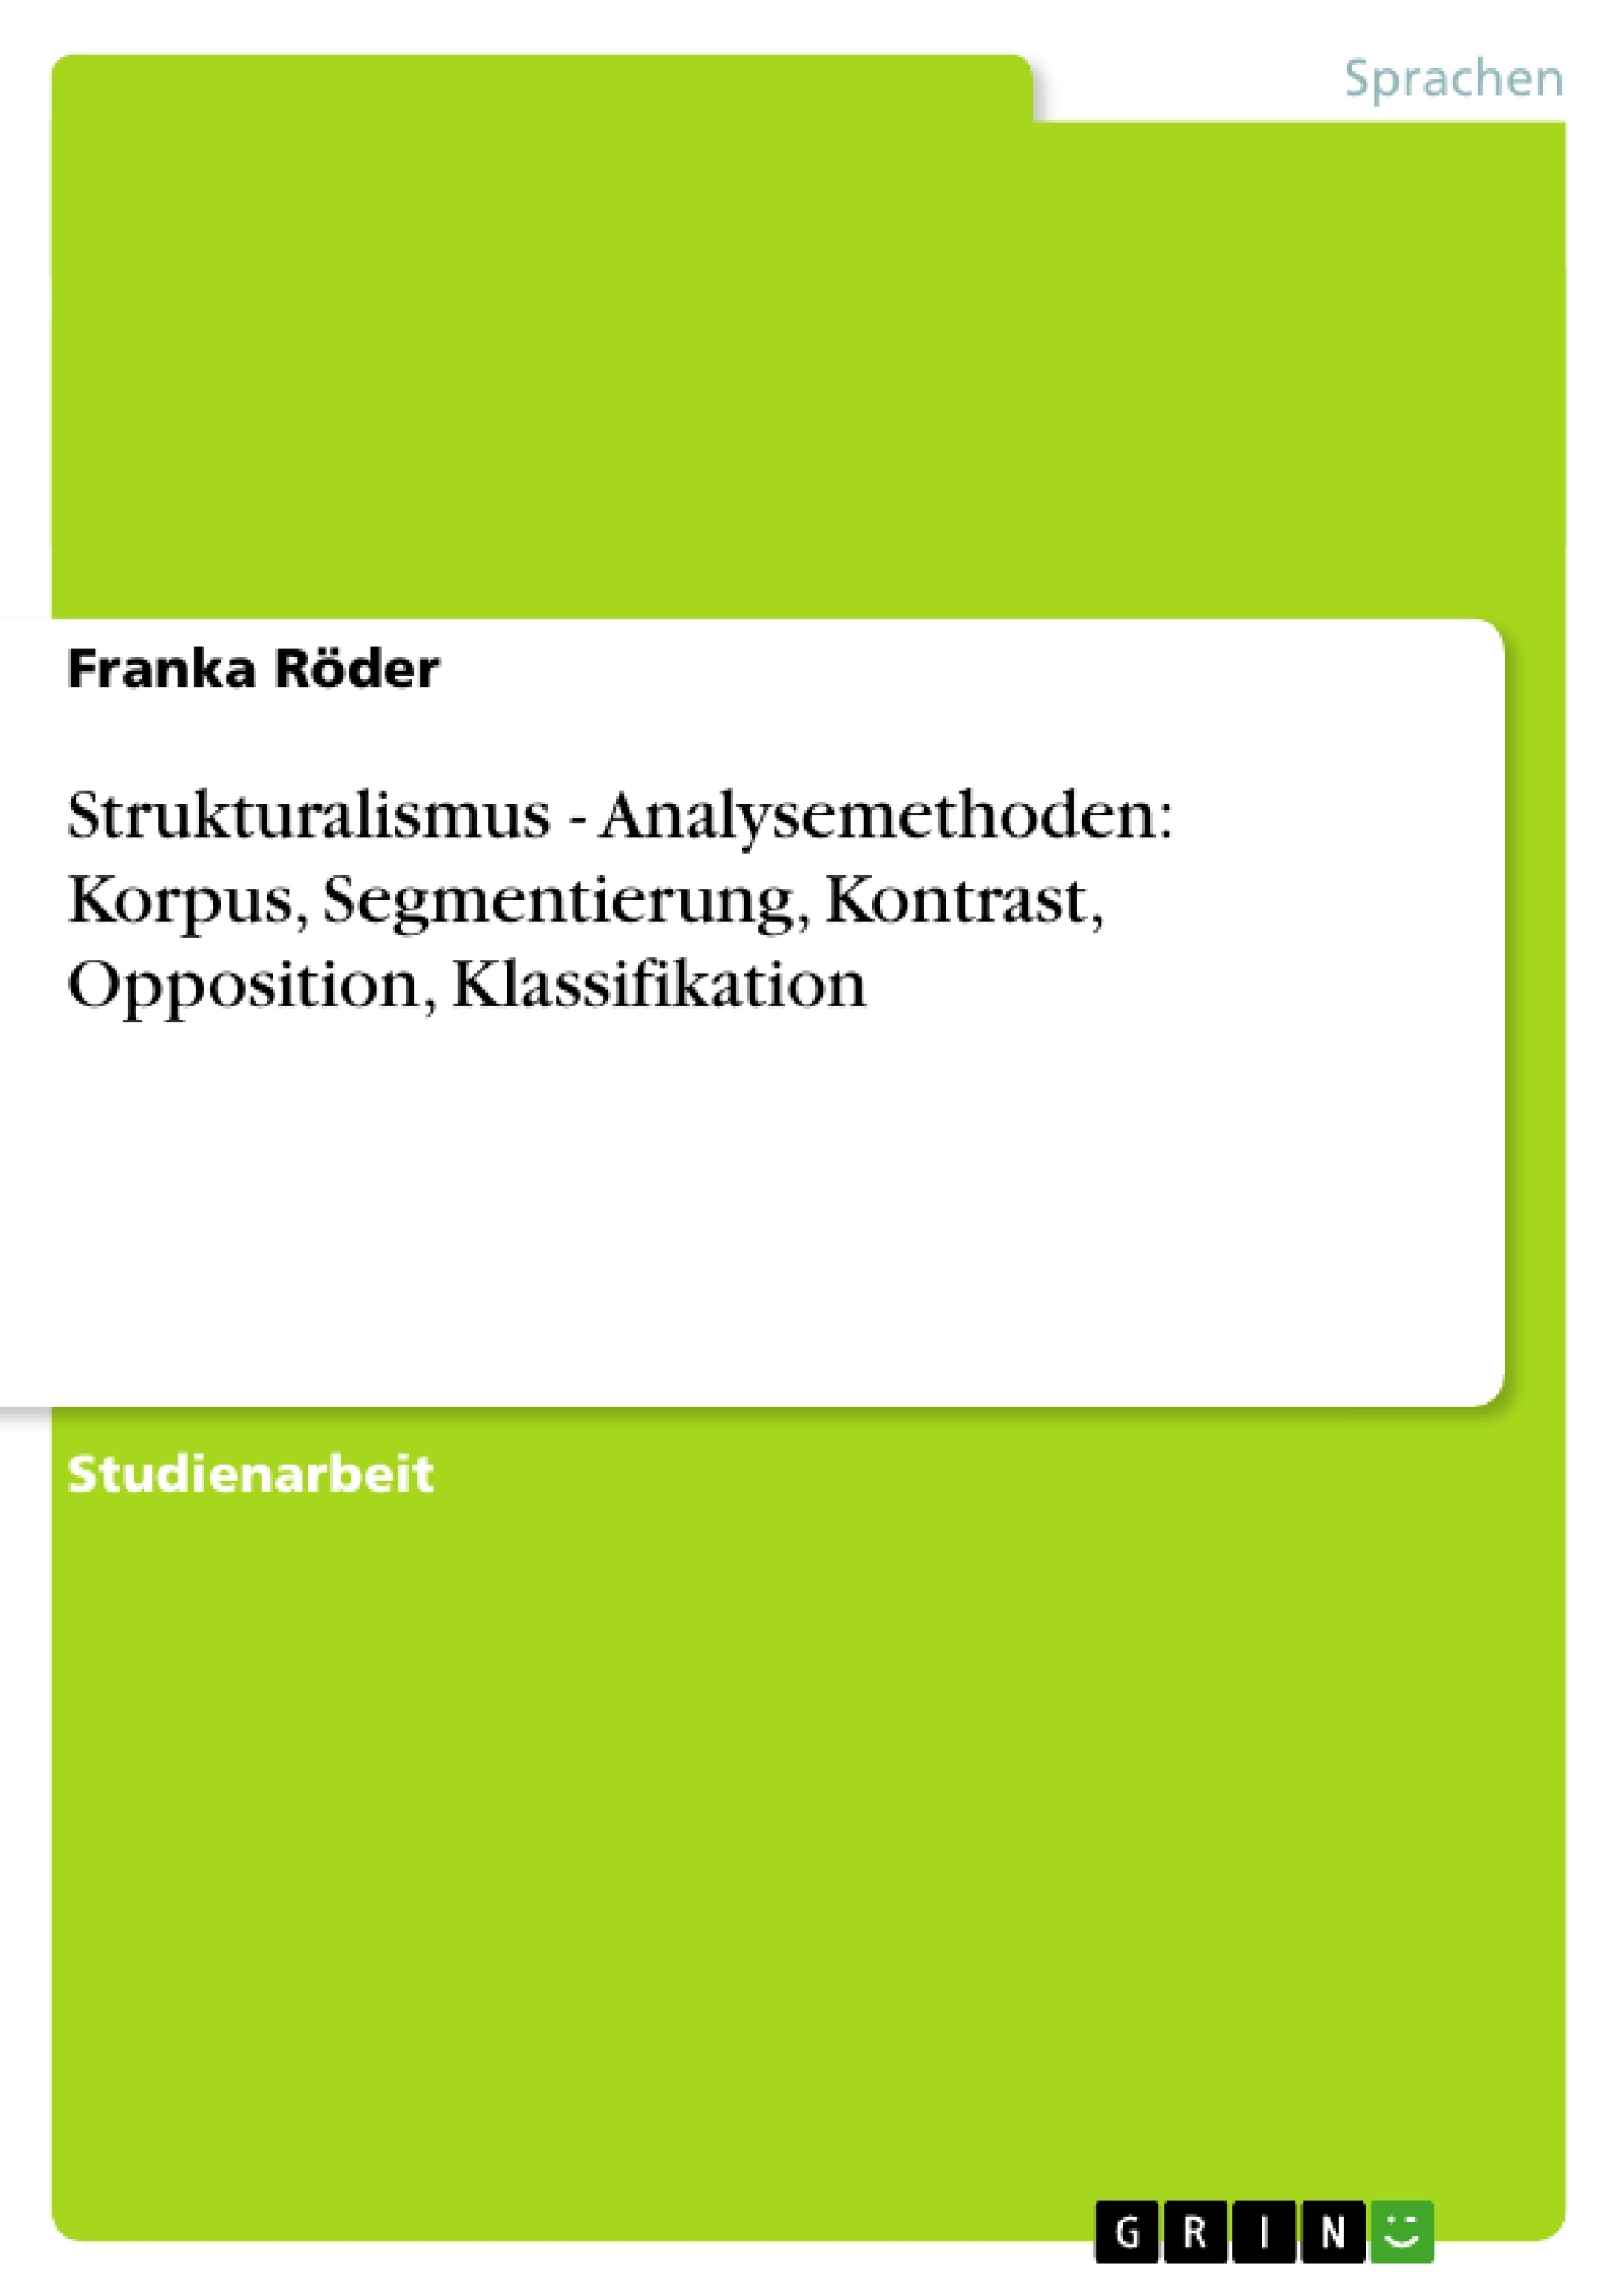 Título: Strukturalismus - Analysemethoden: Korpus, Segmentierung, Kontrast, Opposition, Klassifikation